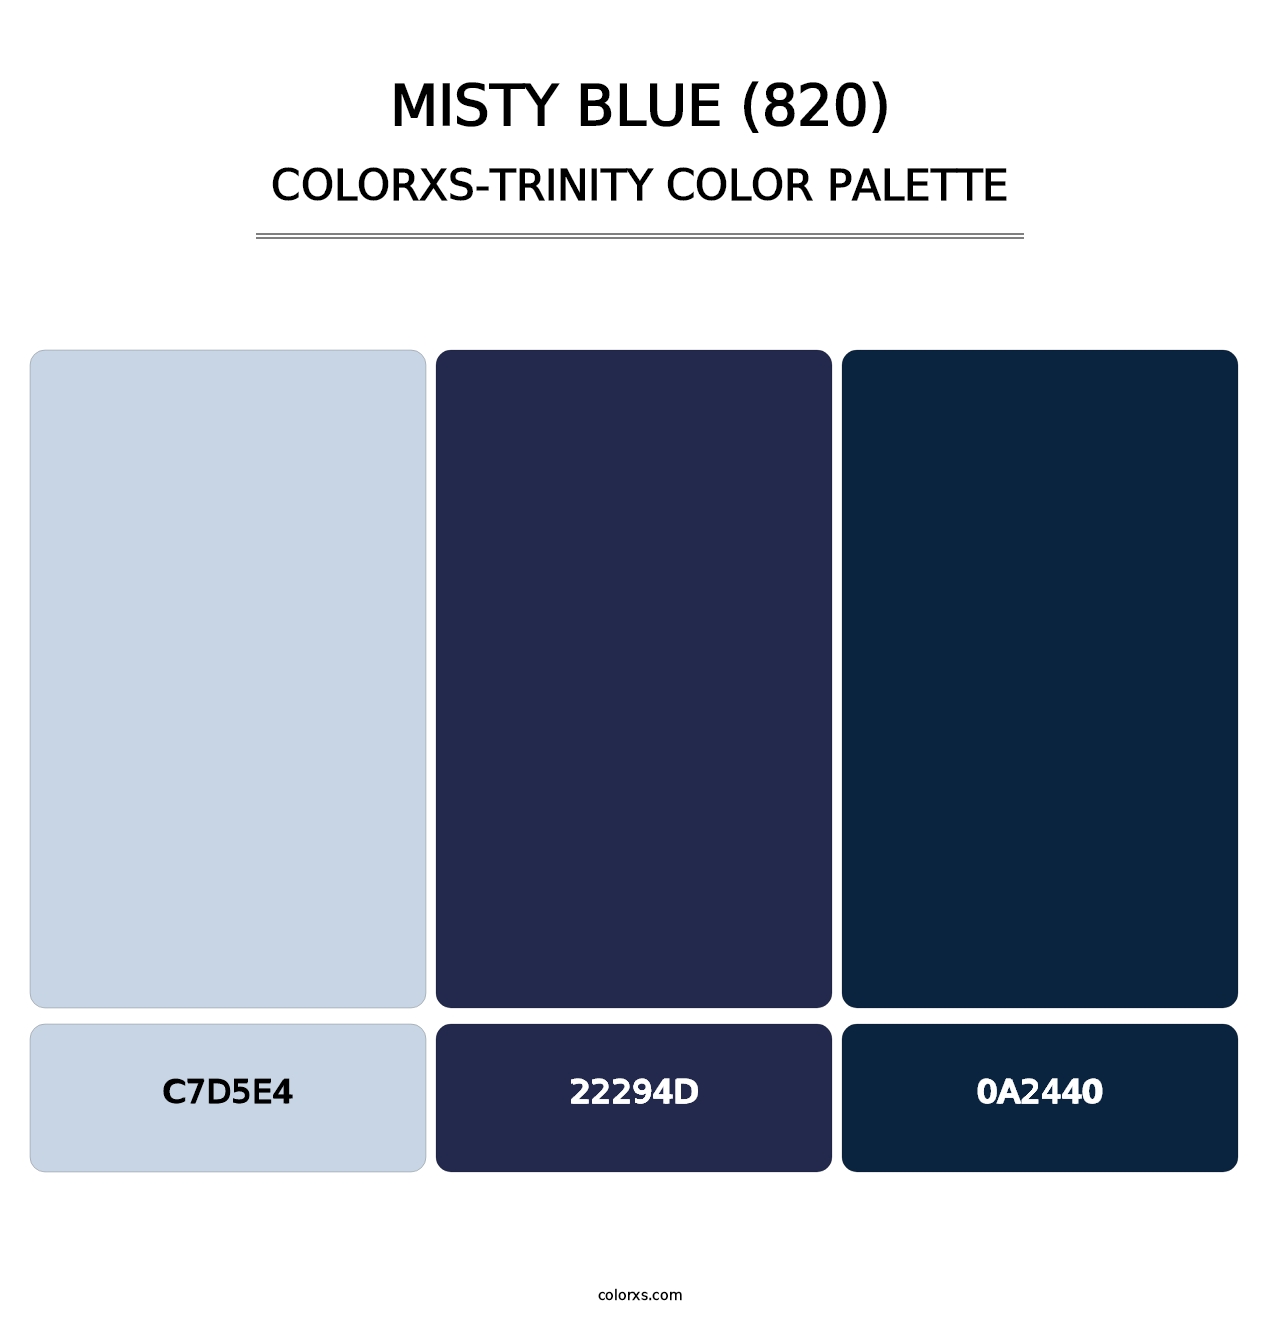 Misty Blue (820) - Colorxs Trinity Palette